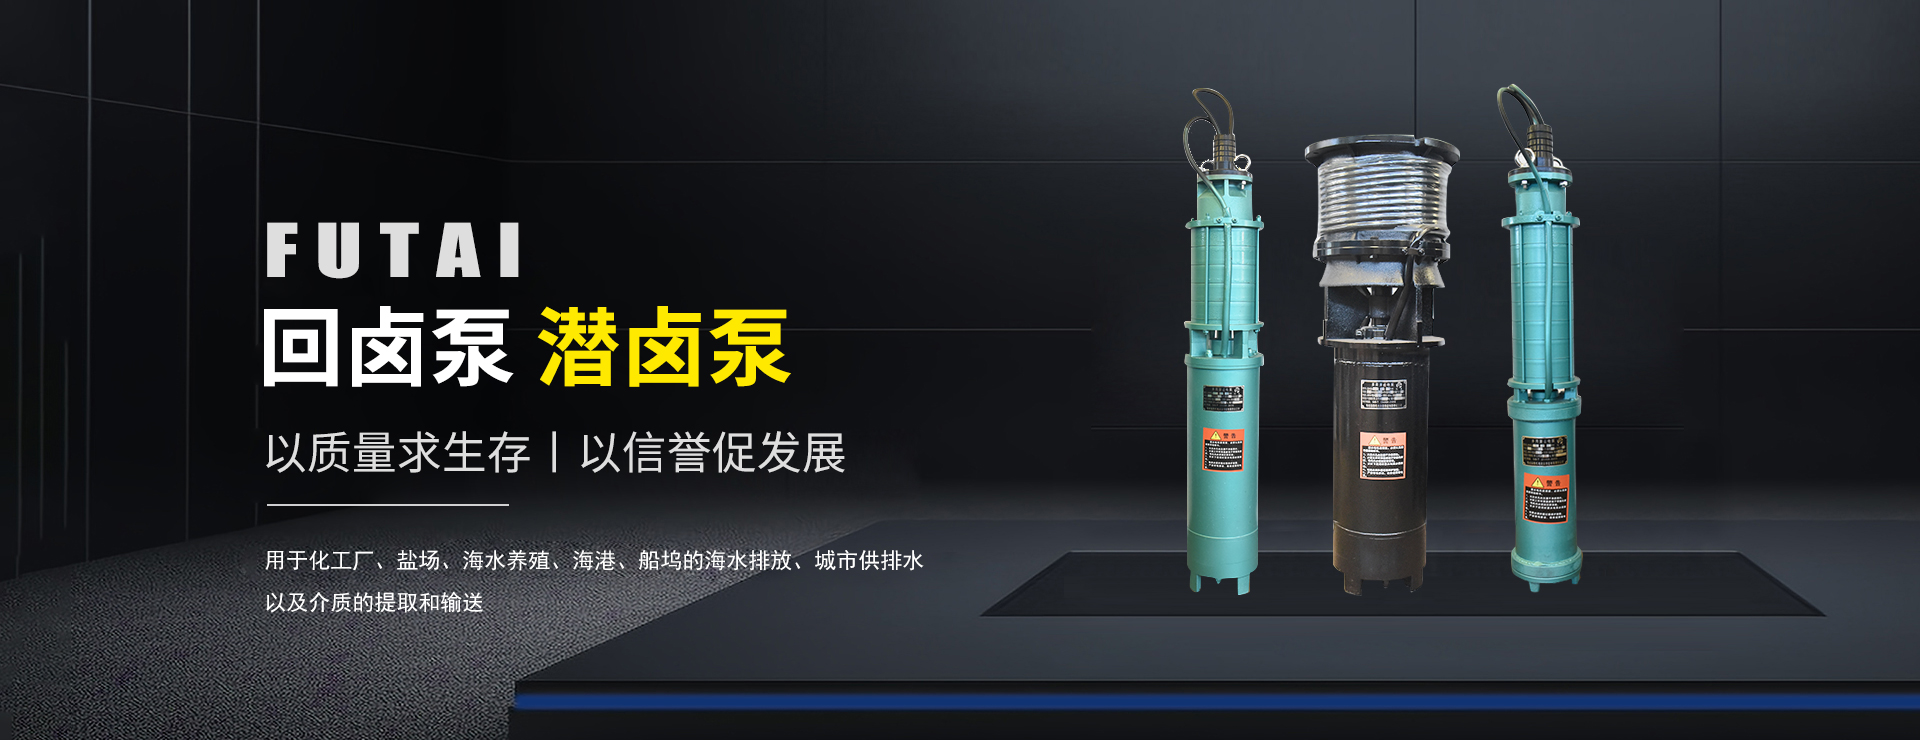 寿光福泰机电设备制造有限责任公司